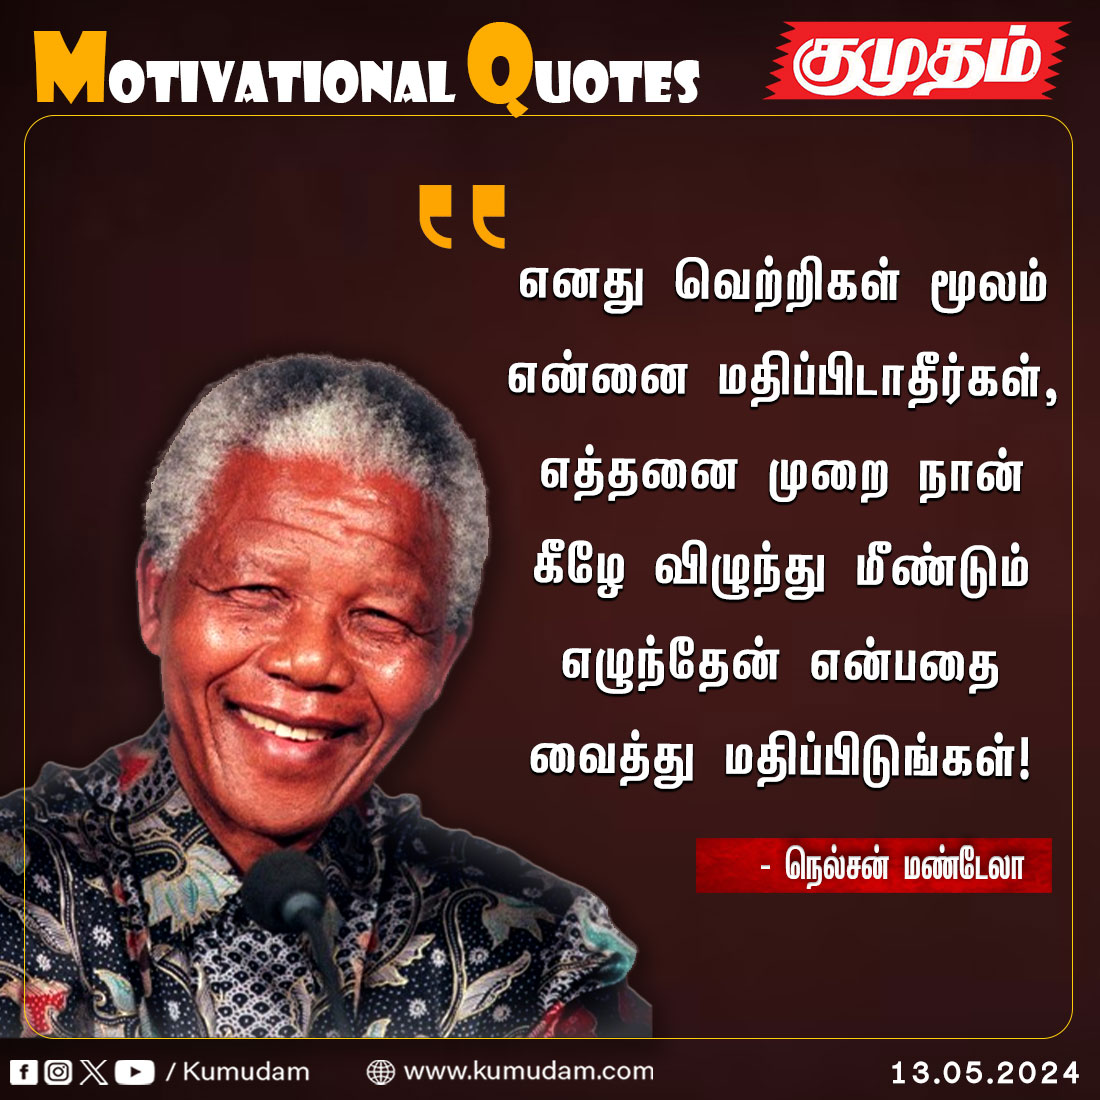 Motivational Quotes..

#Kumudam|#MotivationalQuotes| #InspirationalQuotes|#GoodMorningEveryone|#quotesoftheday